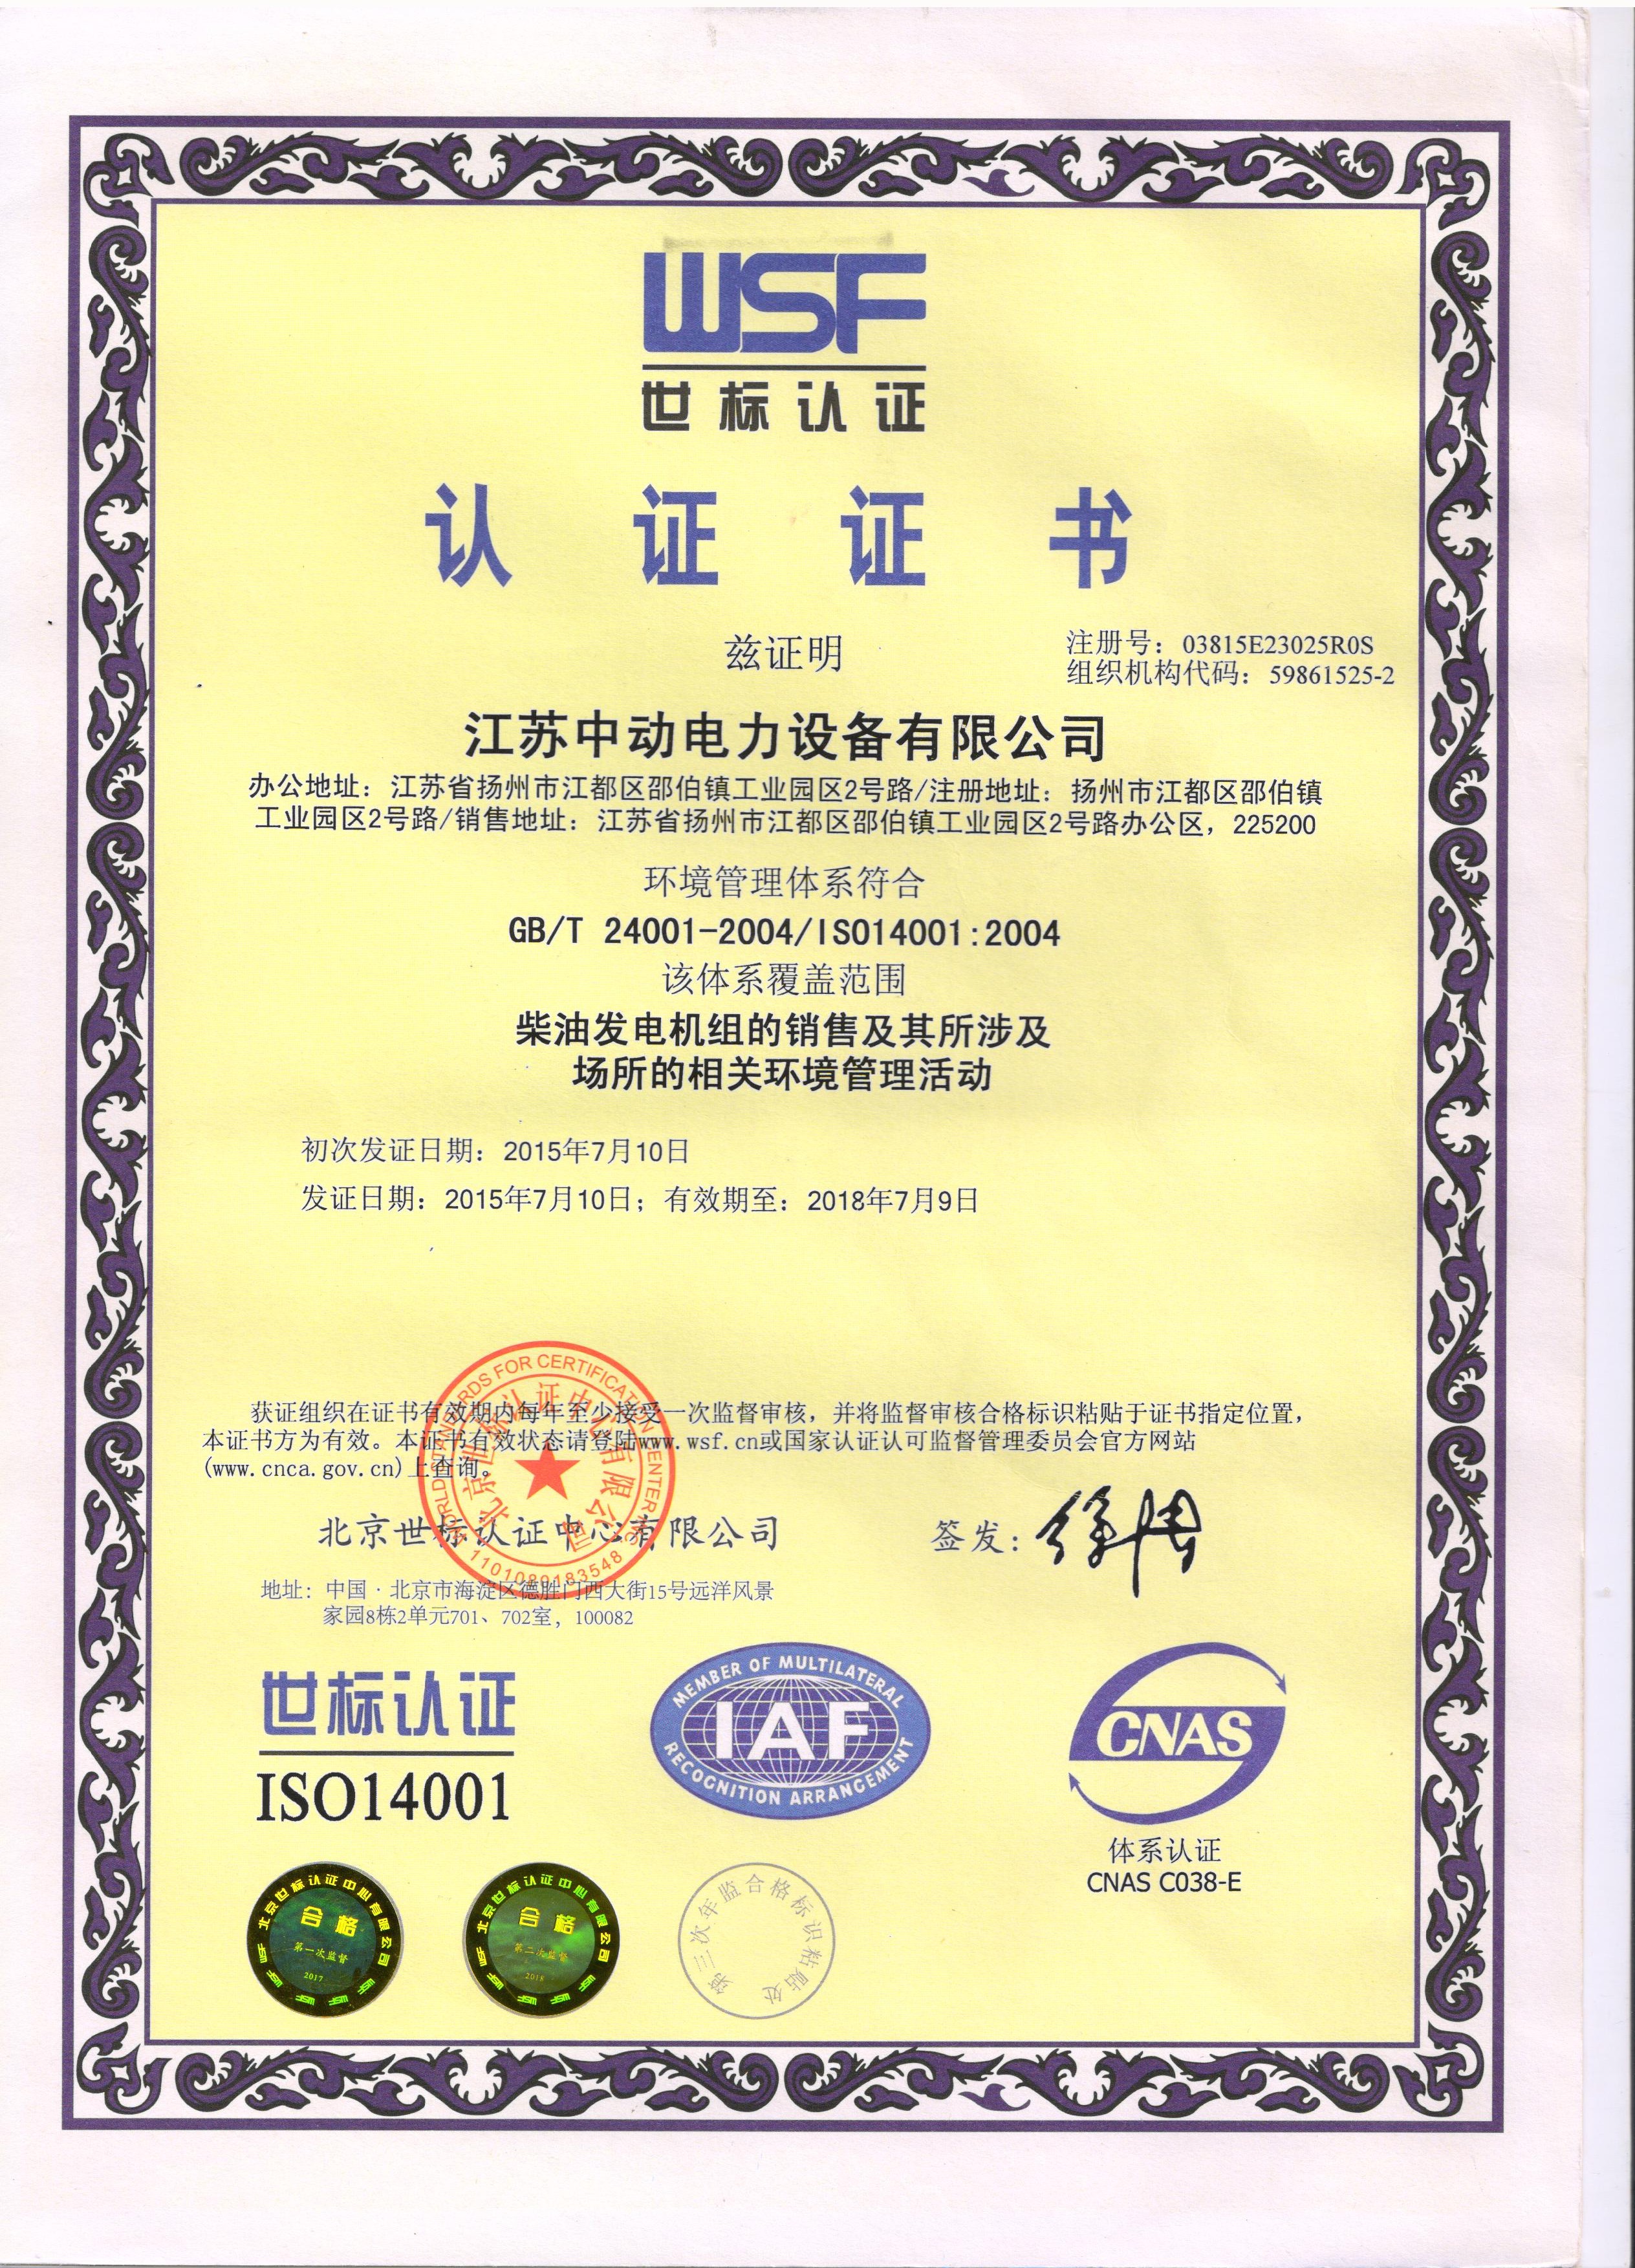 江苏中动电力设备有限公司-环境管理体系认证